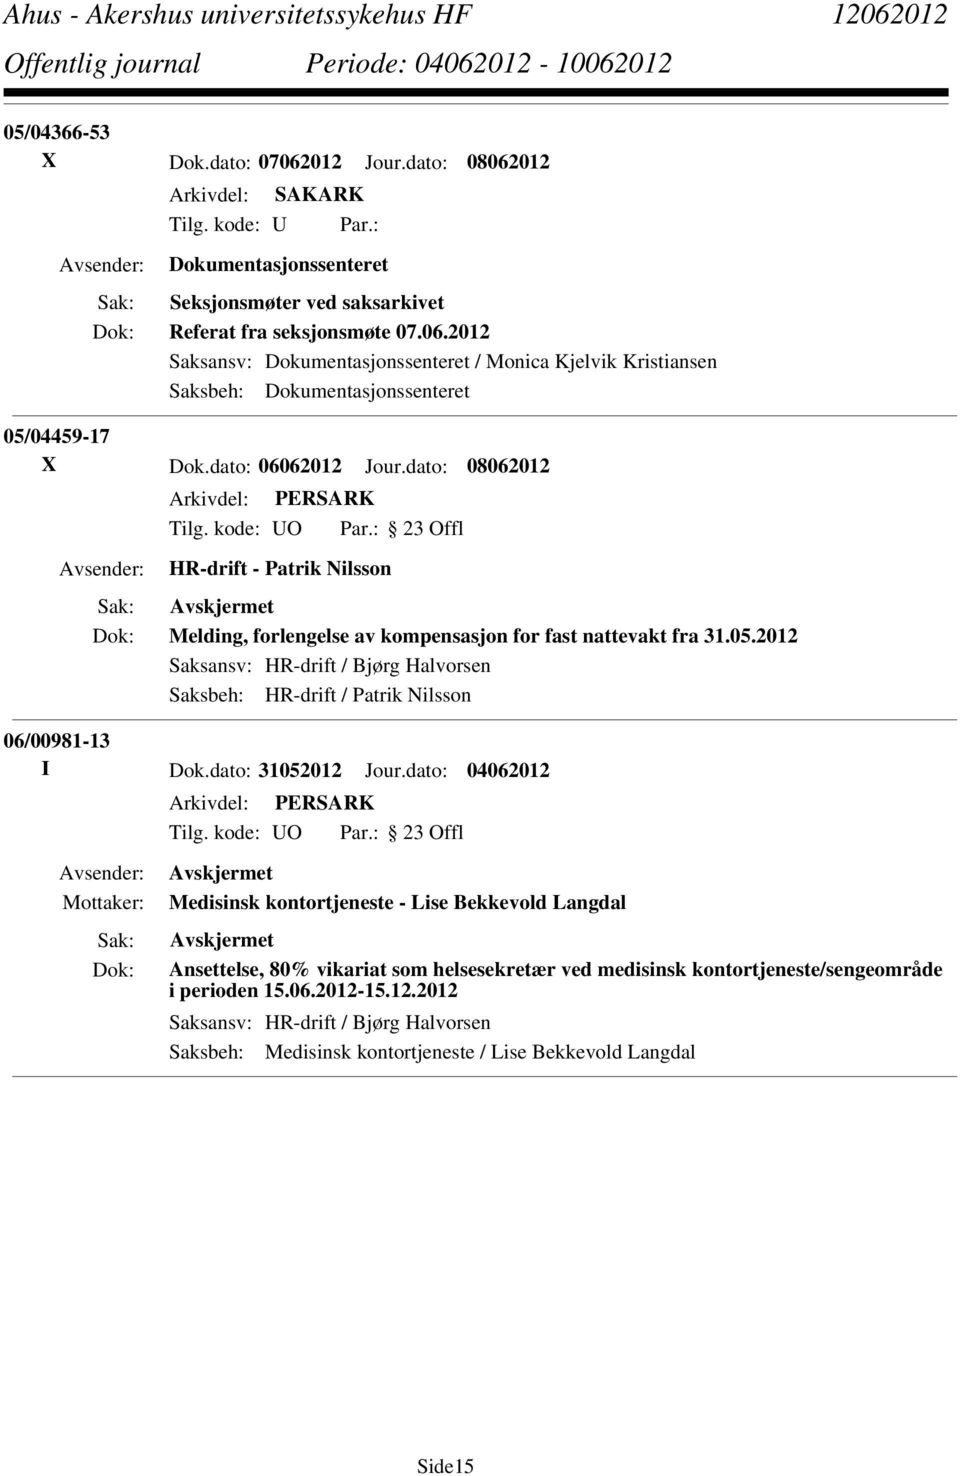 2012 Saksansv: HR-drift / Bjørg Halvorsen Saksbeh: HR-drift / Patrik Nilsson 06/00981-13 I Dok.dato: 31052012 Jour.